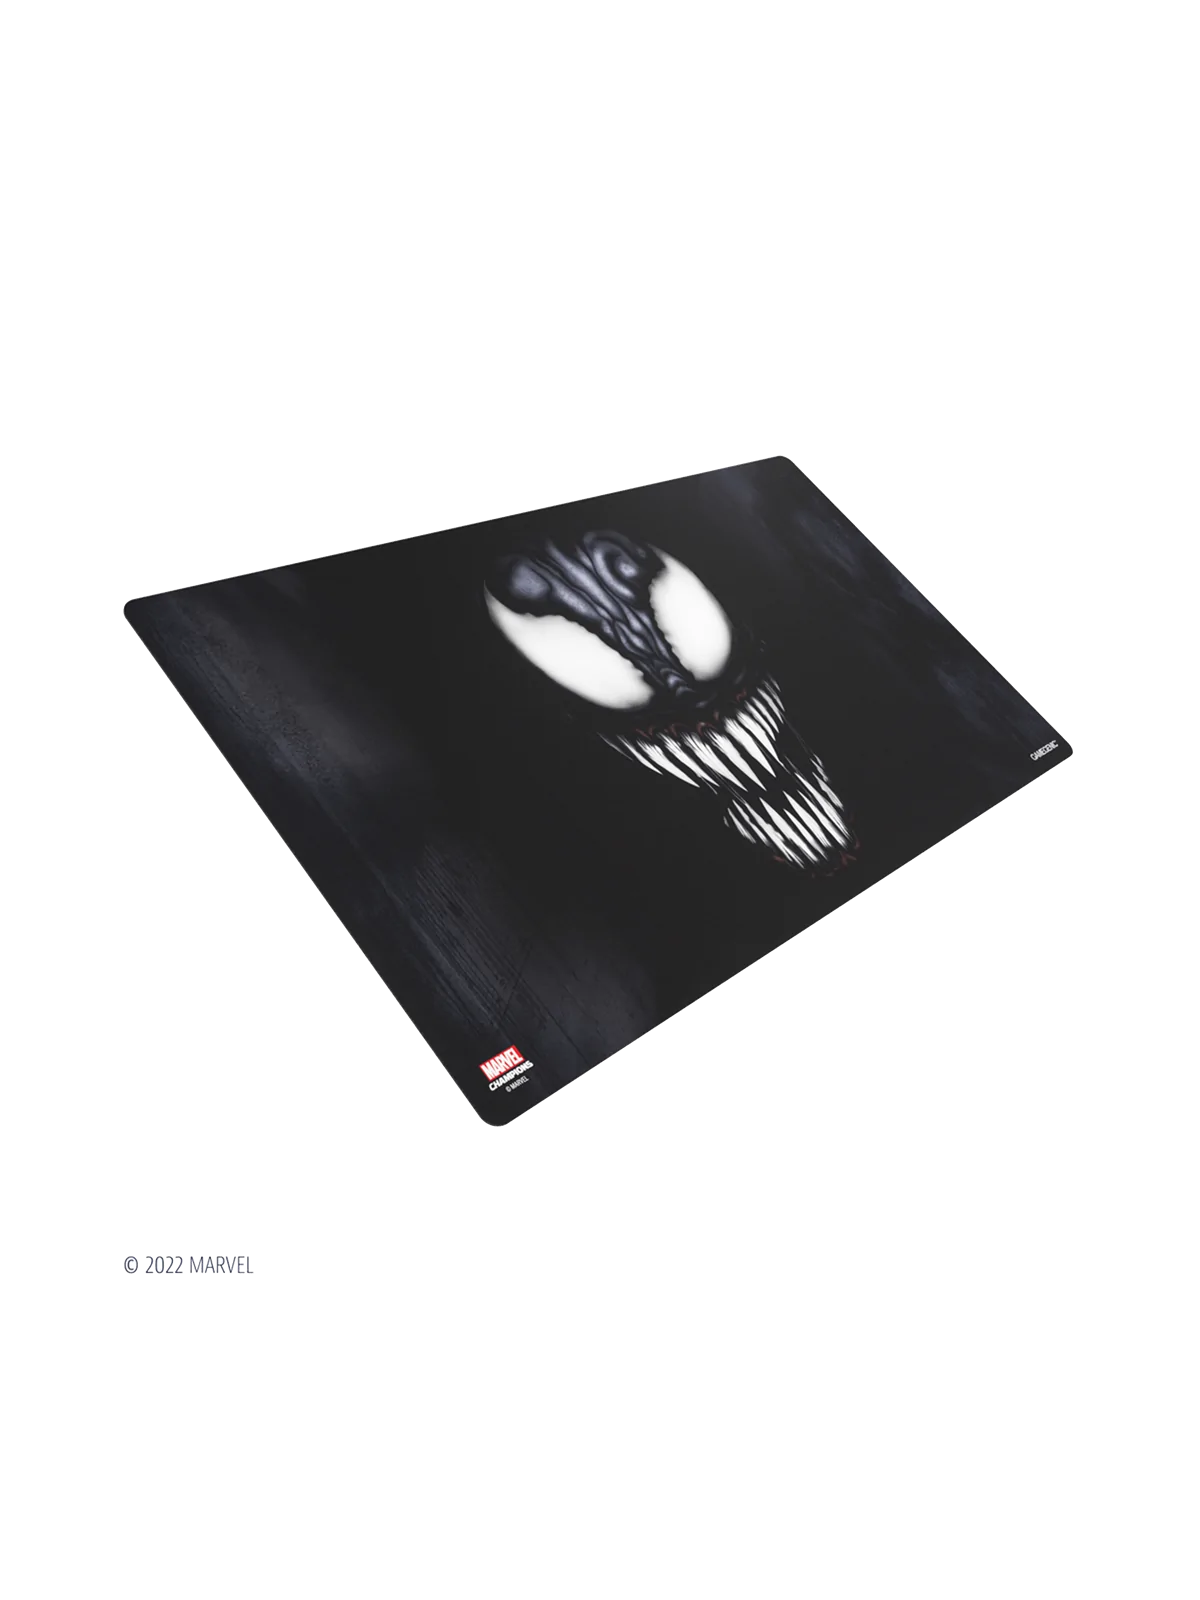 Comprar Marvel Champions Game Mat Venom barato al mejor precio 21,84 €